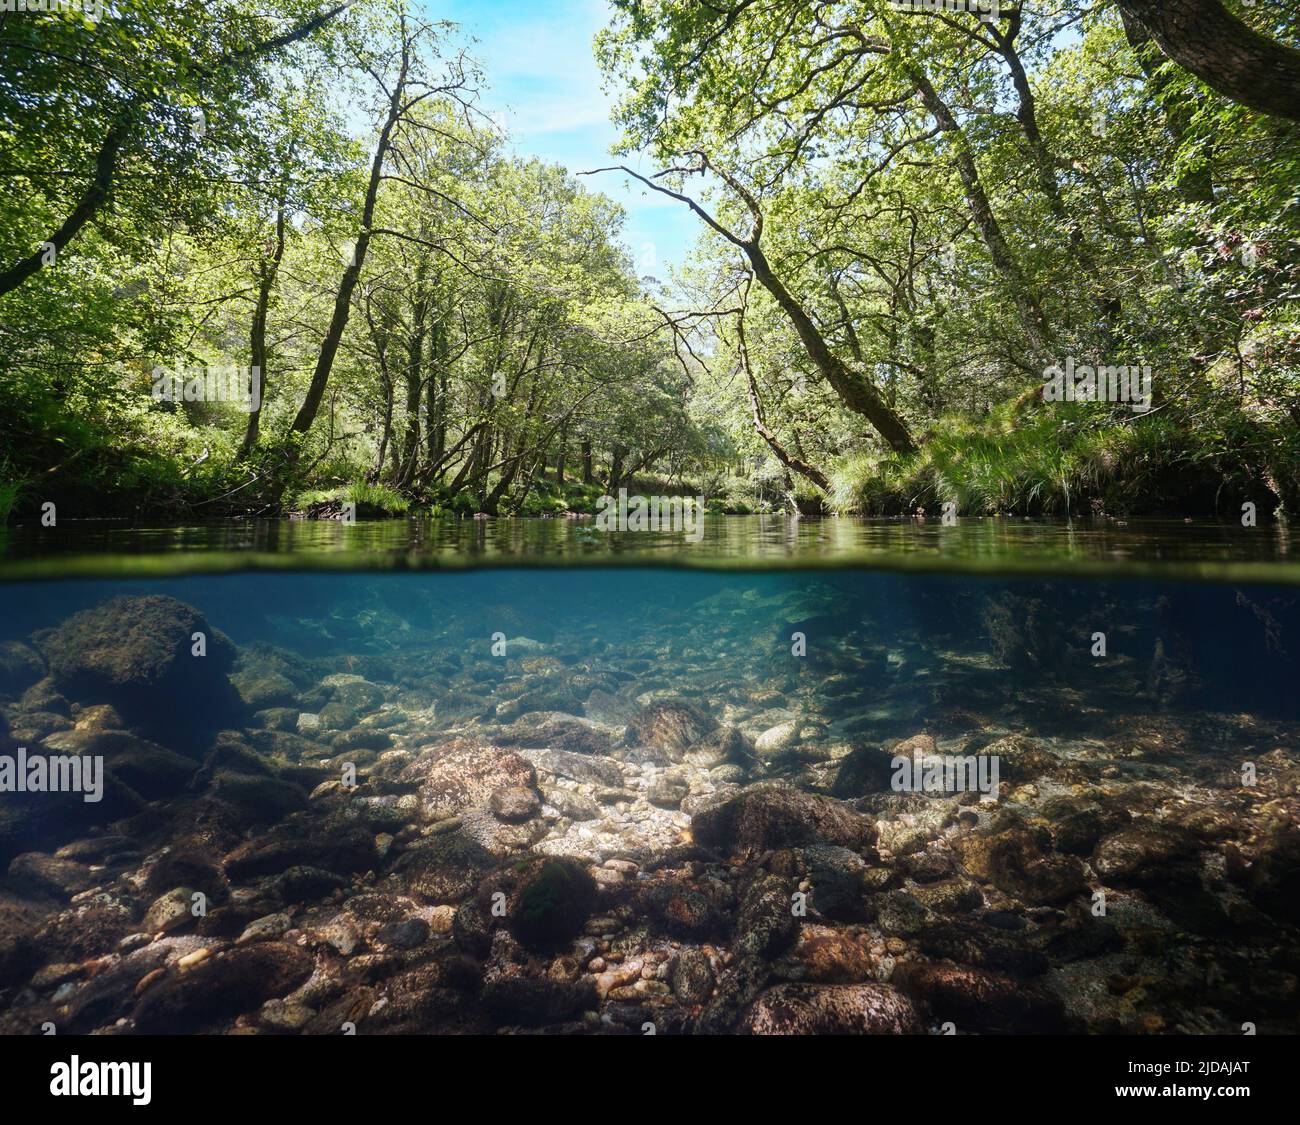 Rivière sauvage avec eau claire sous le feuillage des arbres, vue sur et sous la surface de l'eau, Espagne, Galice, province de Pontevedra, Rio Verdugo Banque D'Images